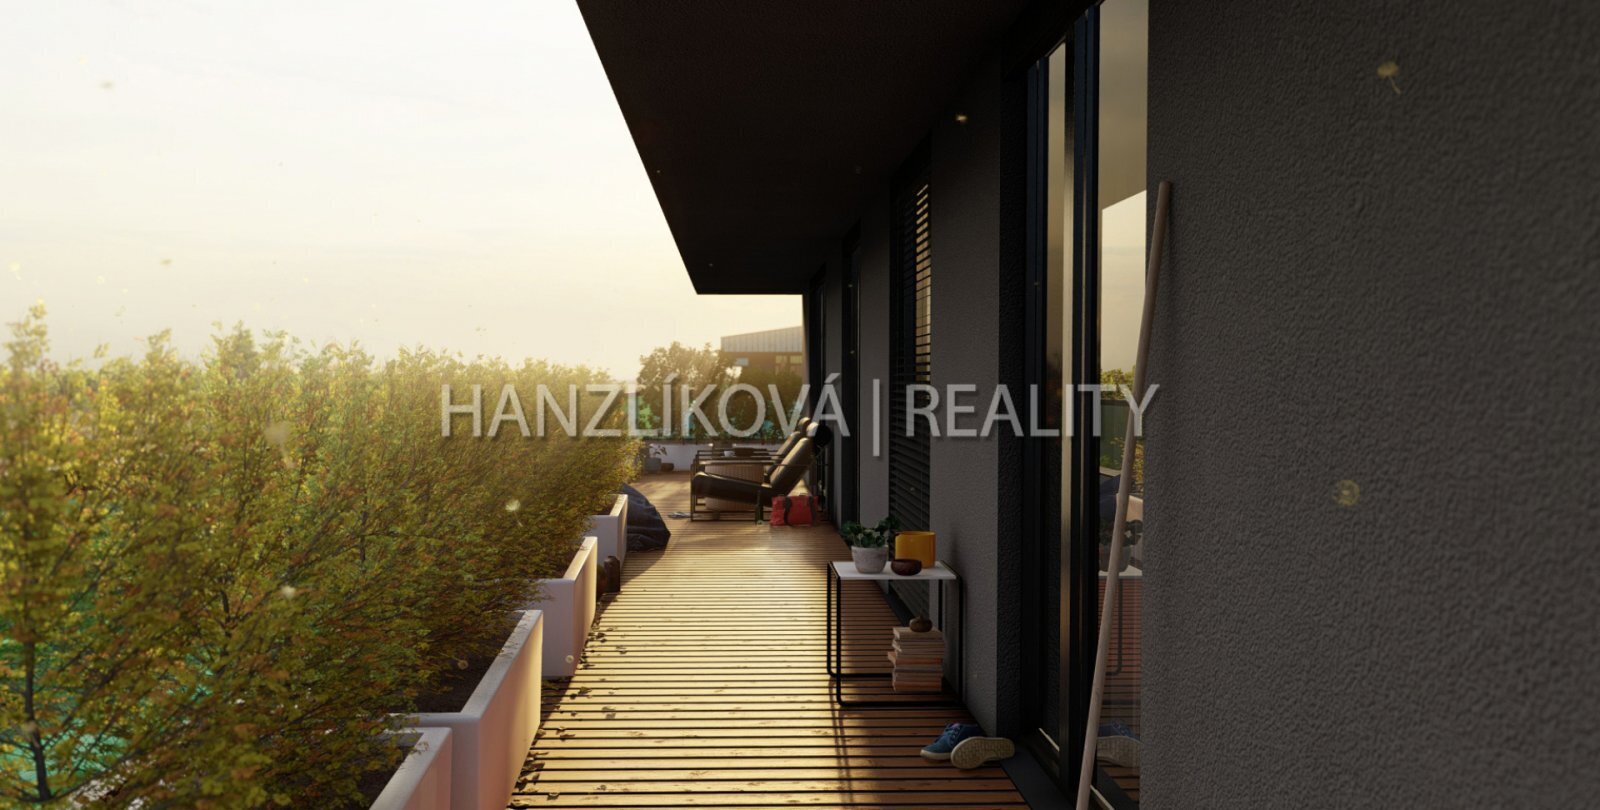 vizualizace bytového domu, terasy Branišovská